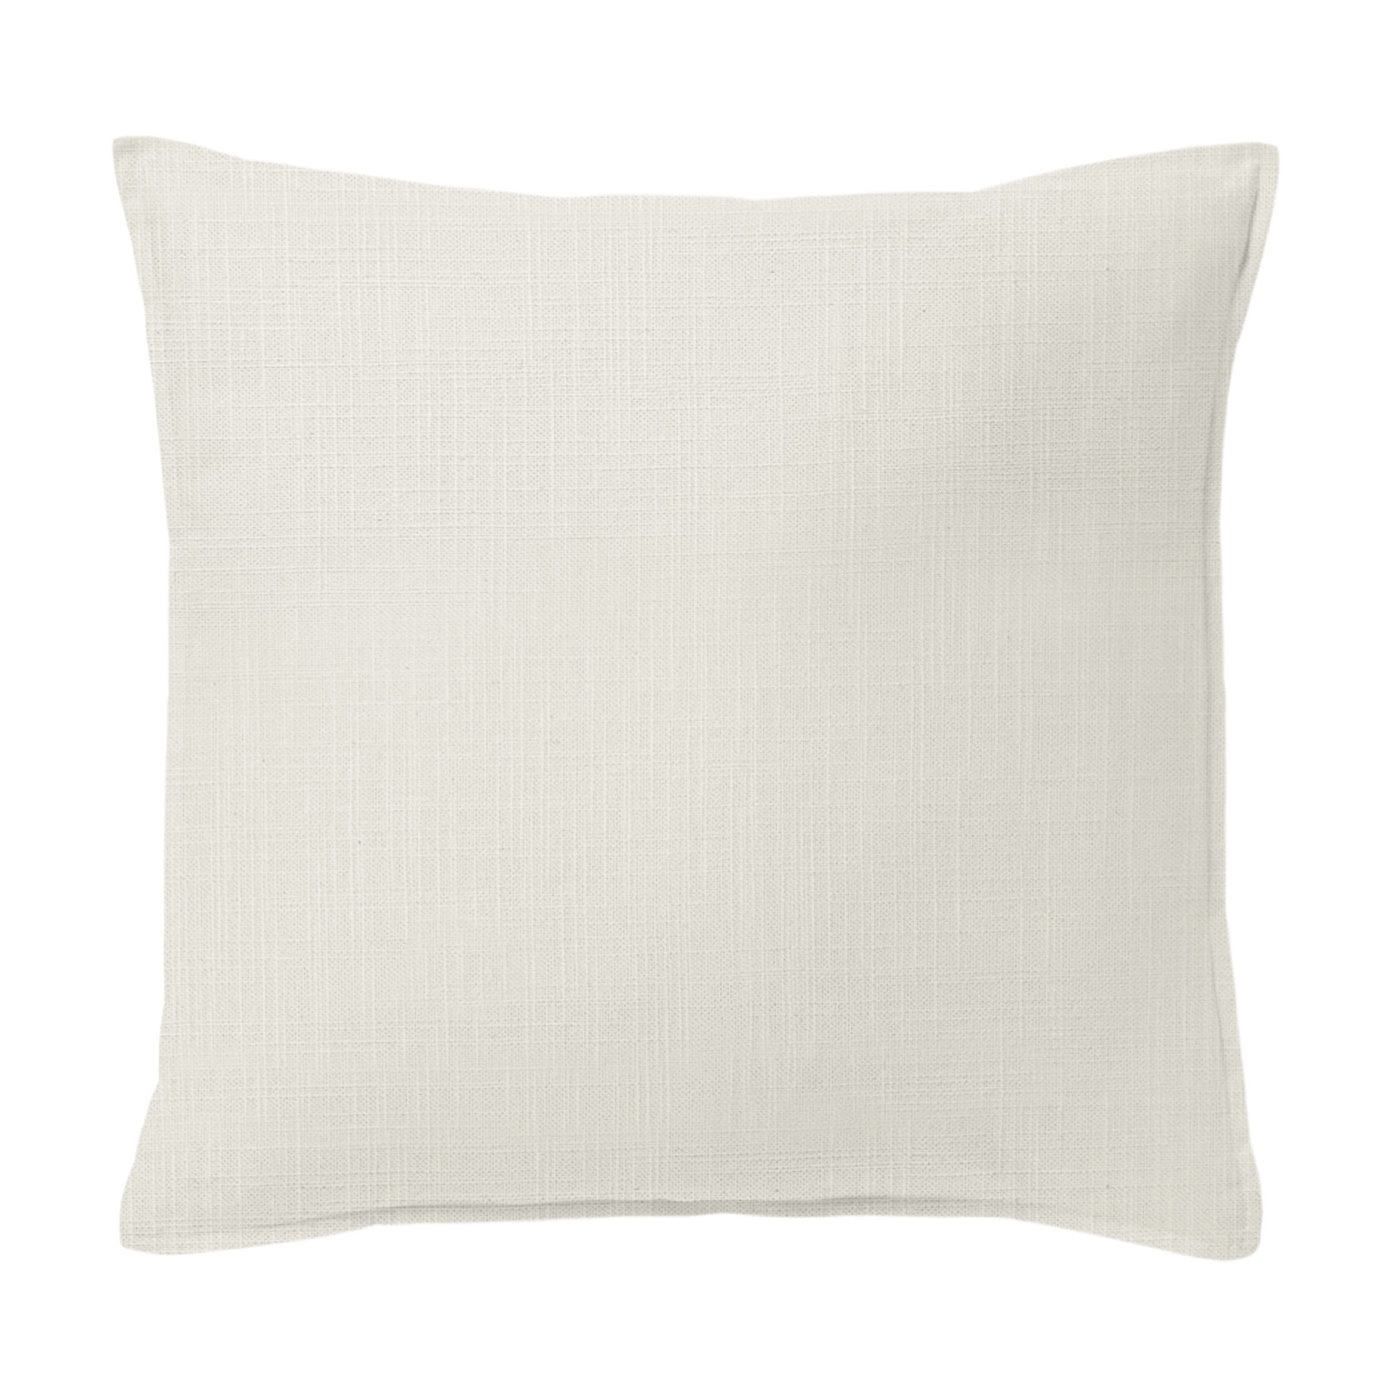 Ancebridge Vanilla Decorative Pillow - Size 20" Square